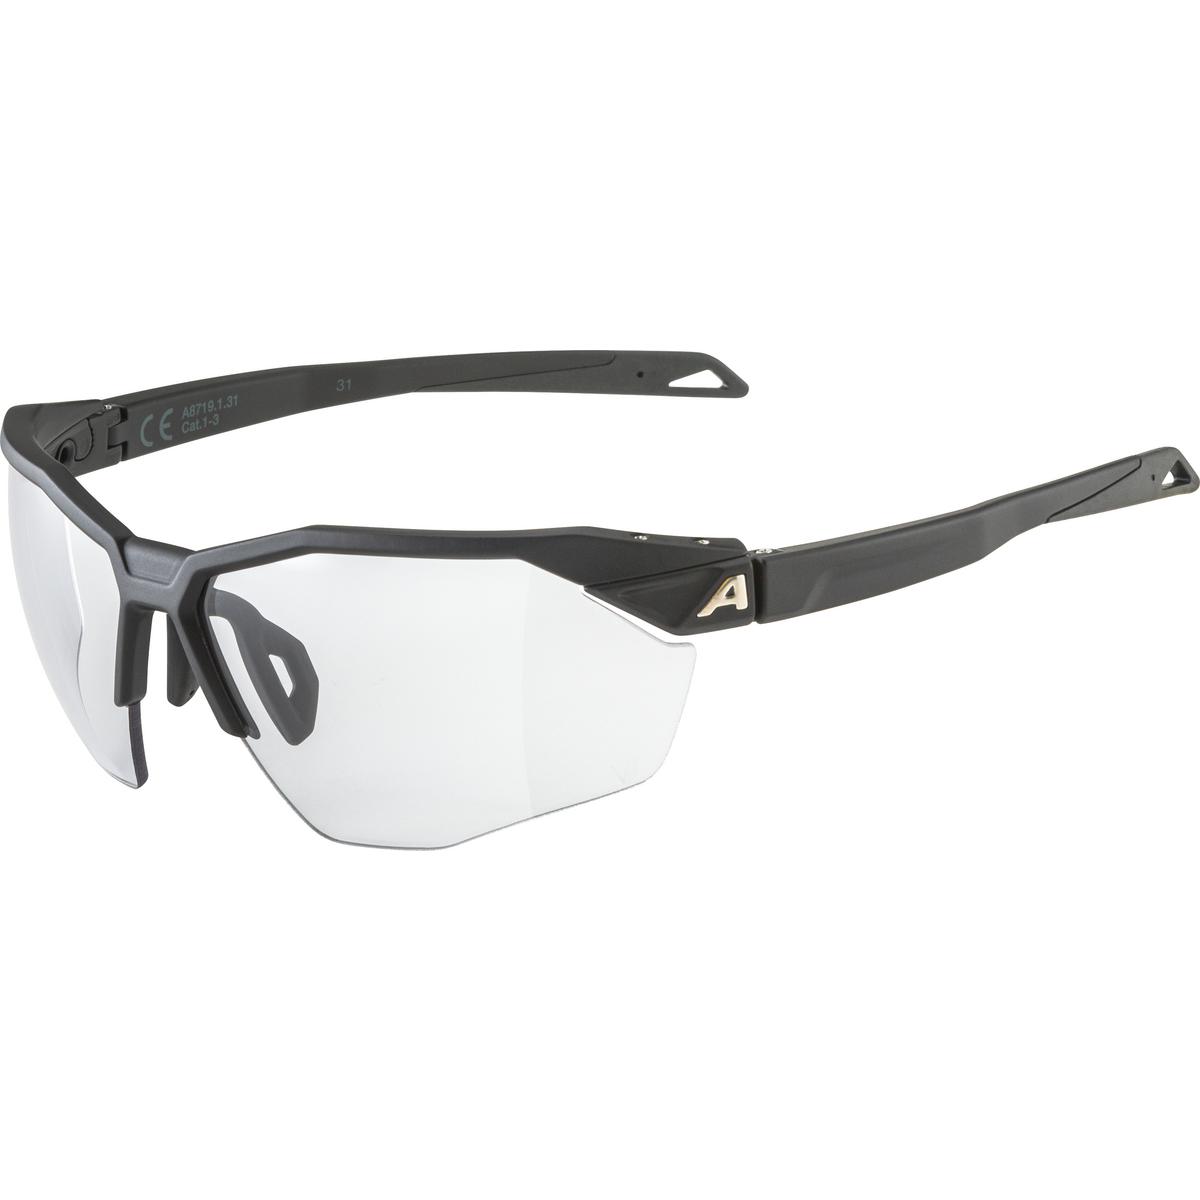 Produktbild von Alpina Twist Six HR V Brille - black matt / Varioflex black